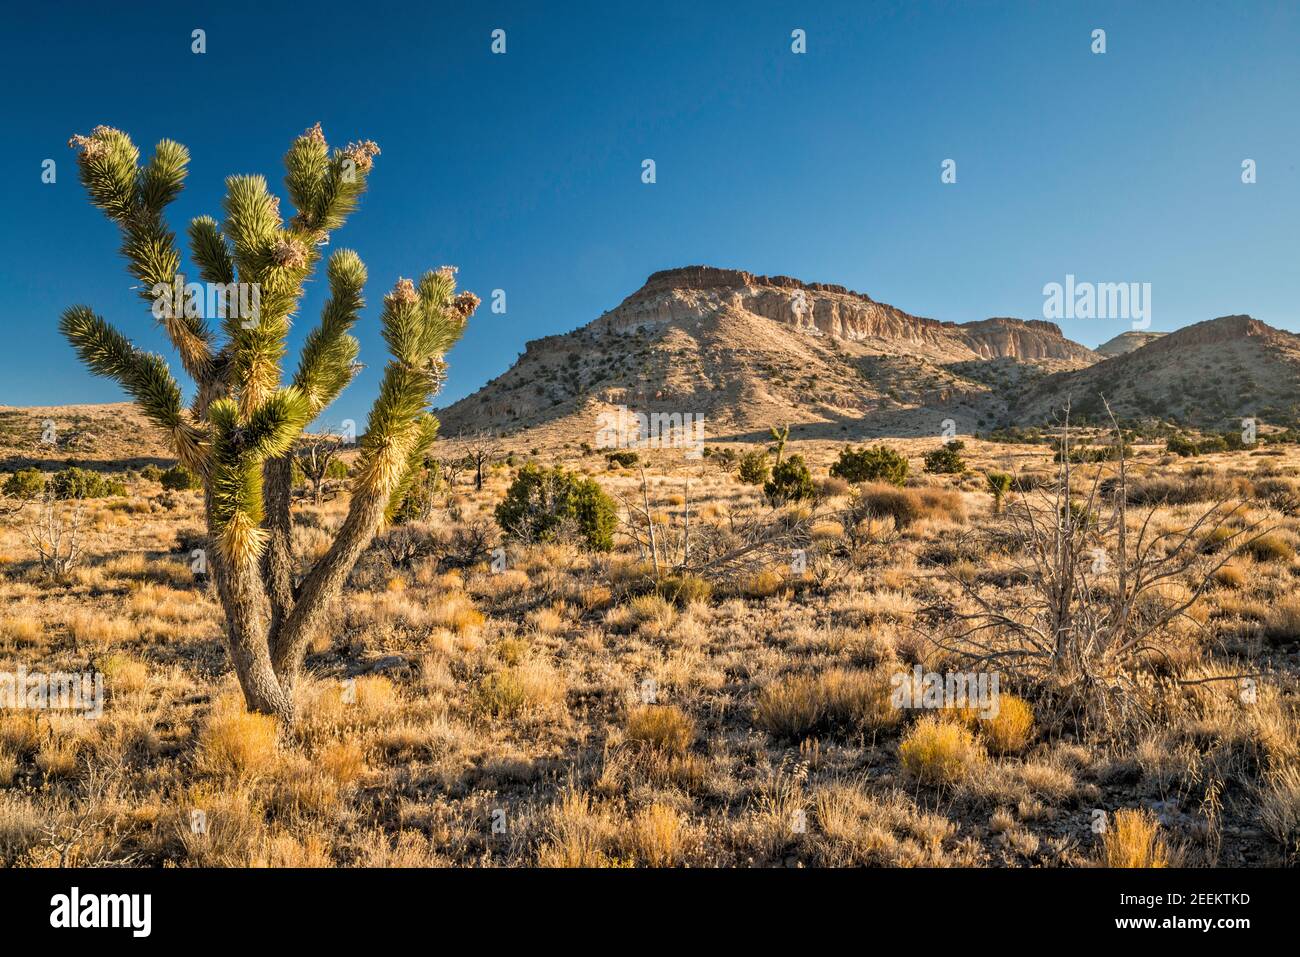 Joshua Tree, Pinto Mountain, vista desde Cedar Canyon Road, Mojave National Preserve, California, Estados Unidos Foto de stock